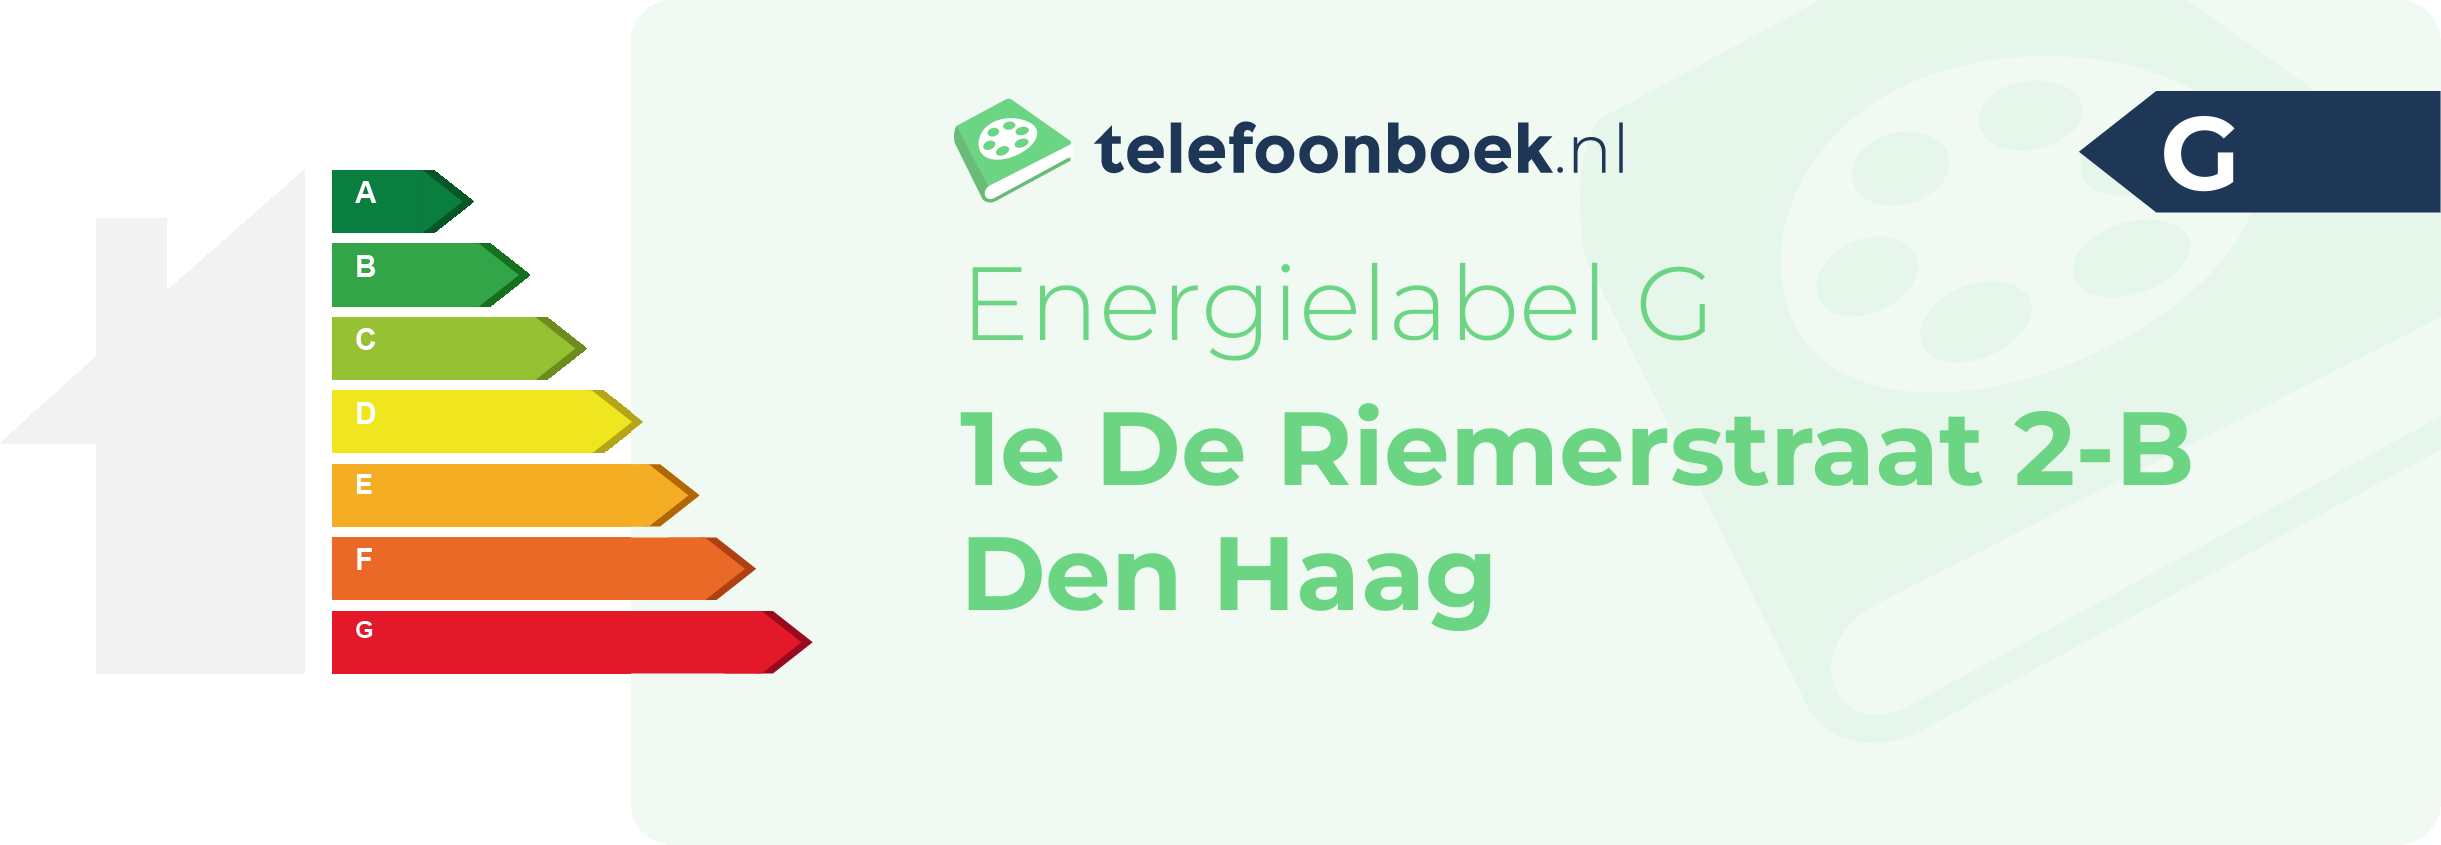 Energielabel 1e De Riemerstraat 2-B Den Haag